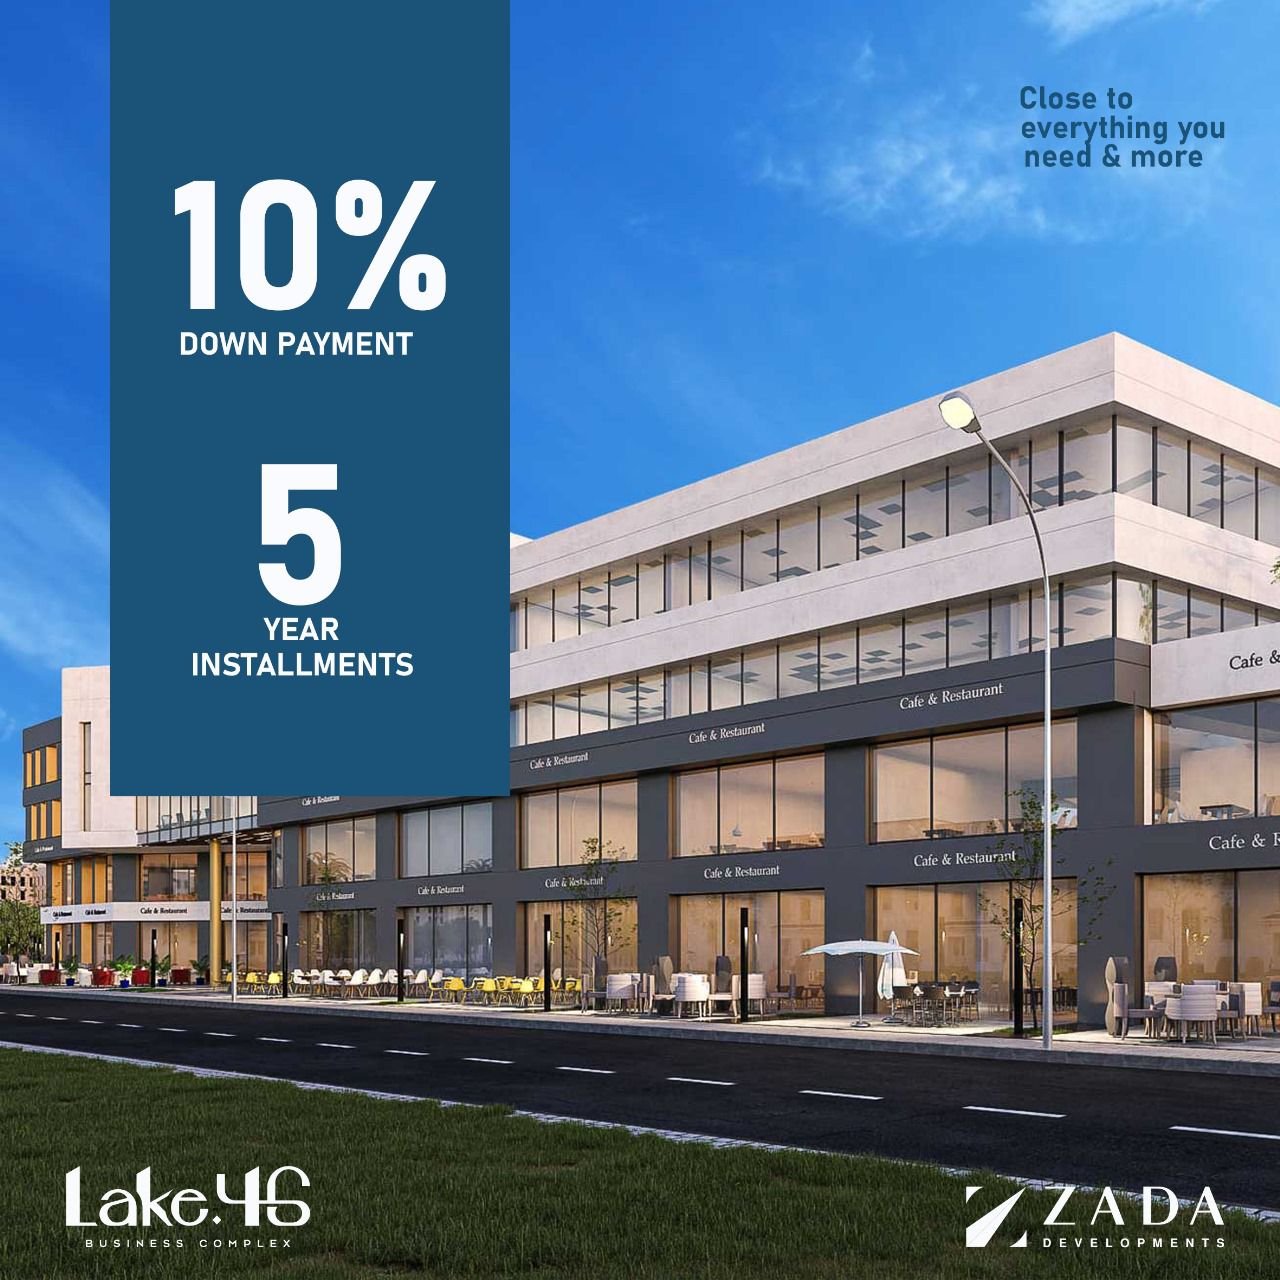 عيادة للبيع بالتقسيط في مدينة 6 أكتوبر مساحة 44 متر بمقدم 25% وتقسيط يصل الي 5 سنوات في مول LAKE 46 Mall | THE PEAK PROPERTIES